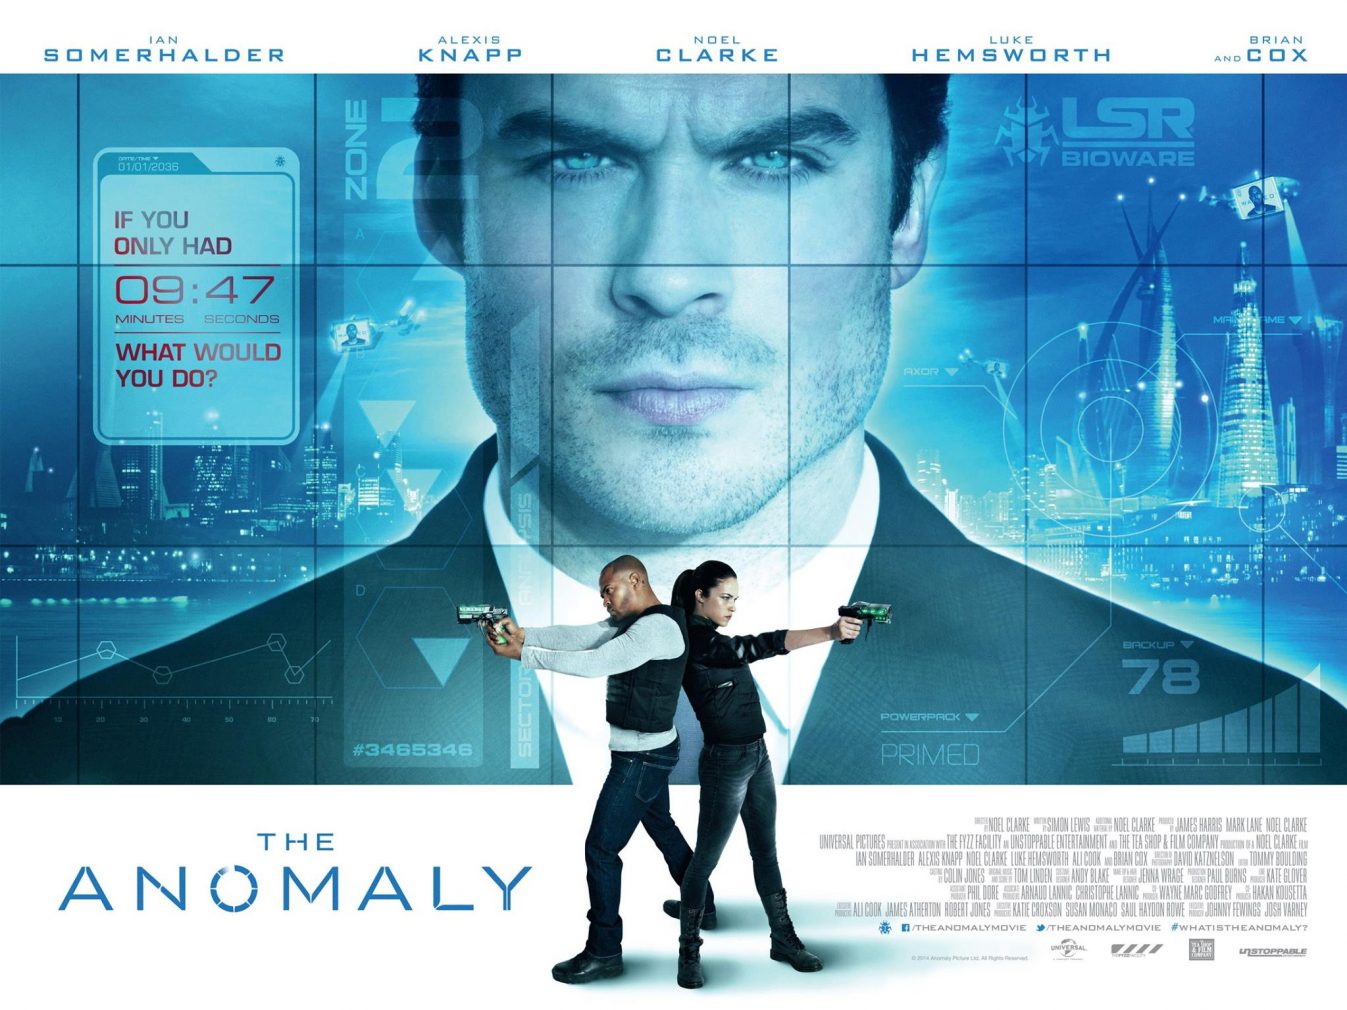 La bande annonce de The Anomaly avec Ian Somerhalder